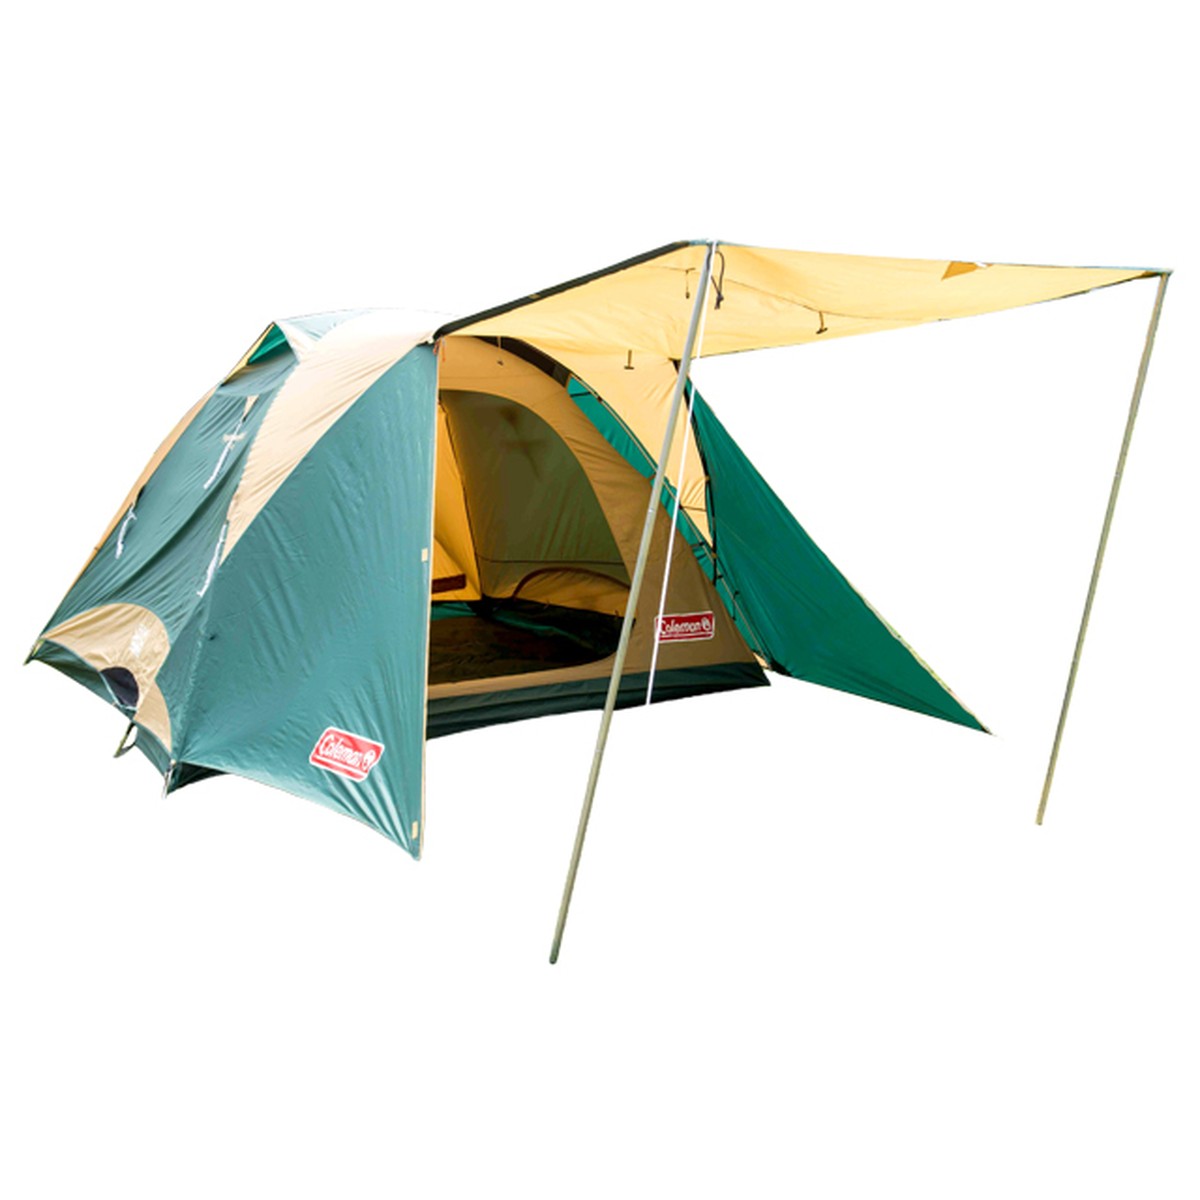 中古品 送料込 タフワイドドーム300ex Coleman 寝袋 2 インナーマット付 Outdoor Shop テント